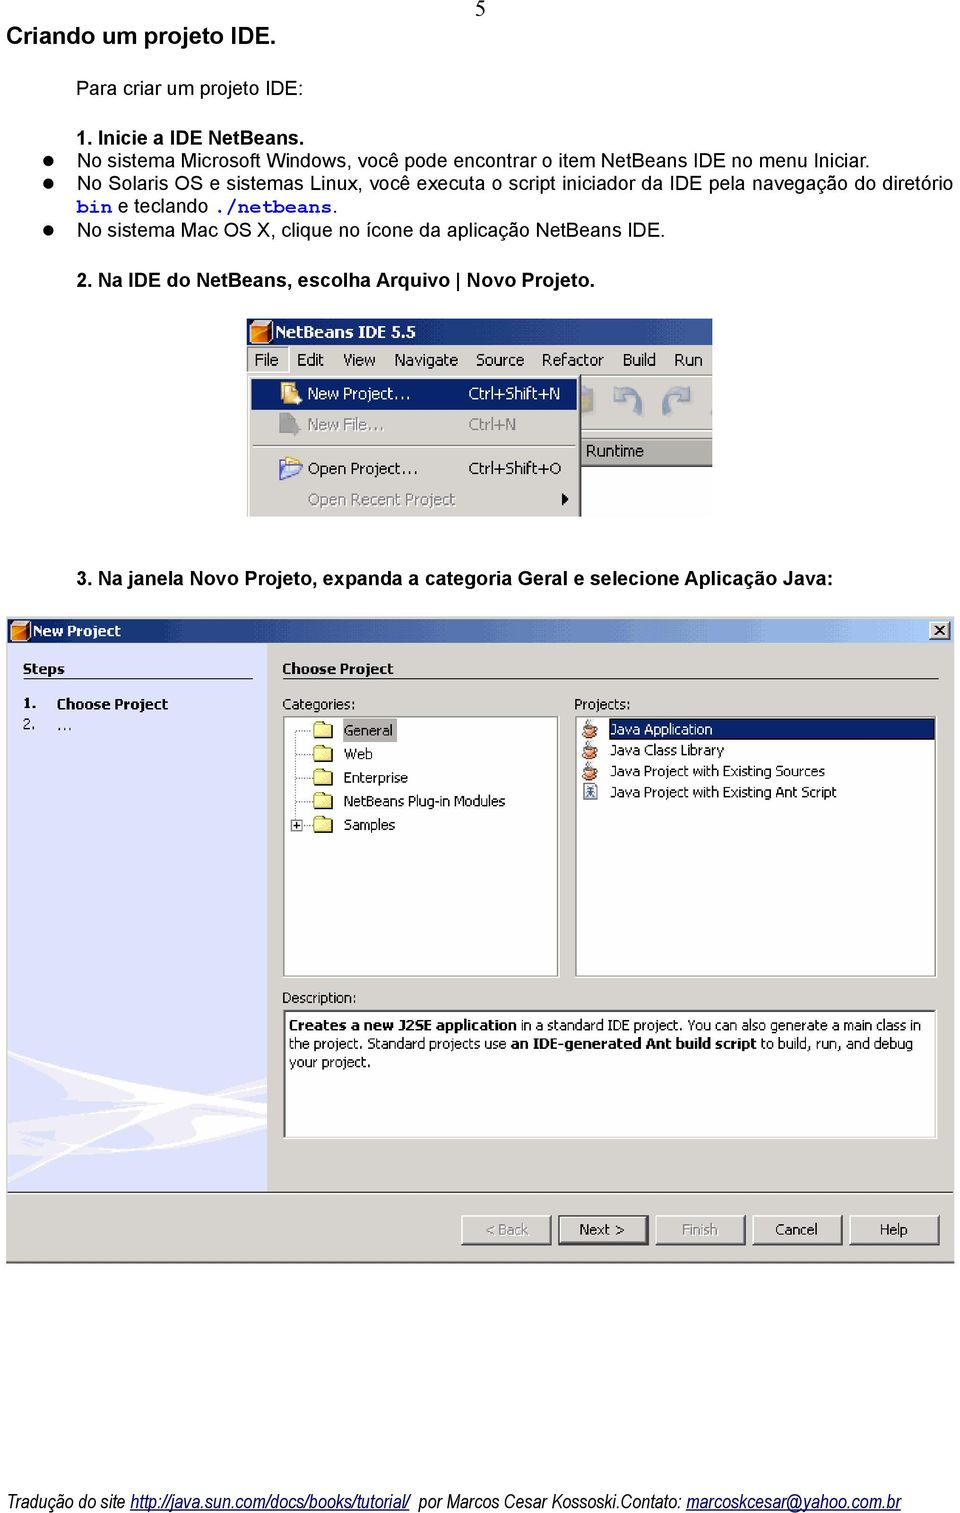 No Solaris OS e sistemas Linux, você executa o script iniciador da IDE pela navegação do diretório bin e teclando.